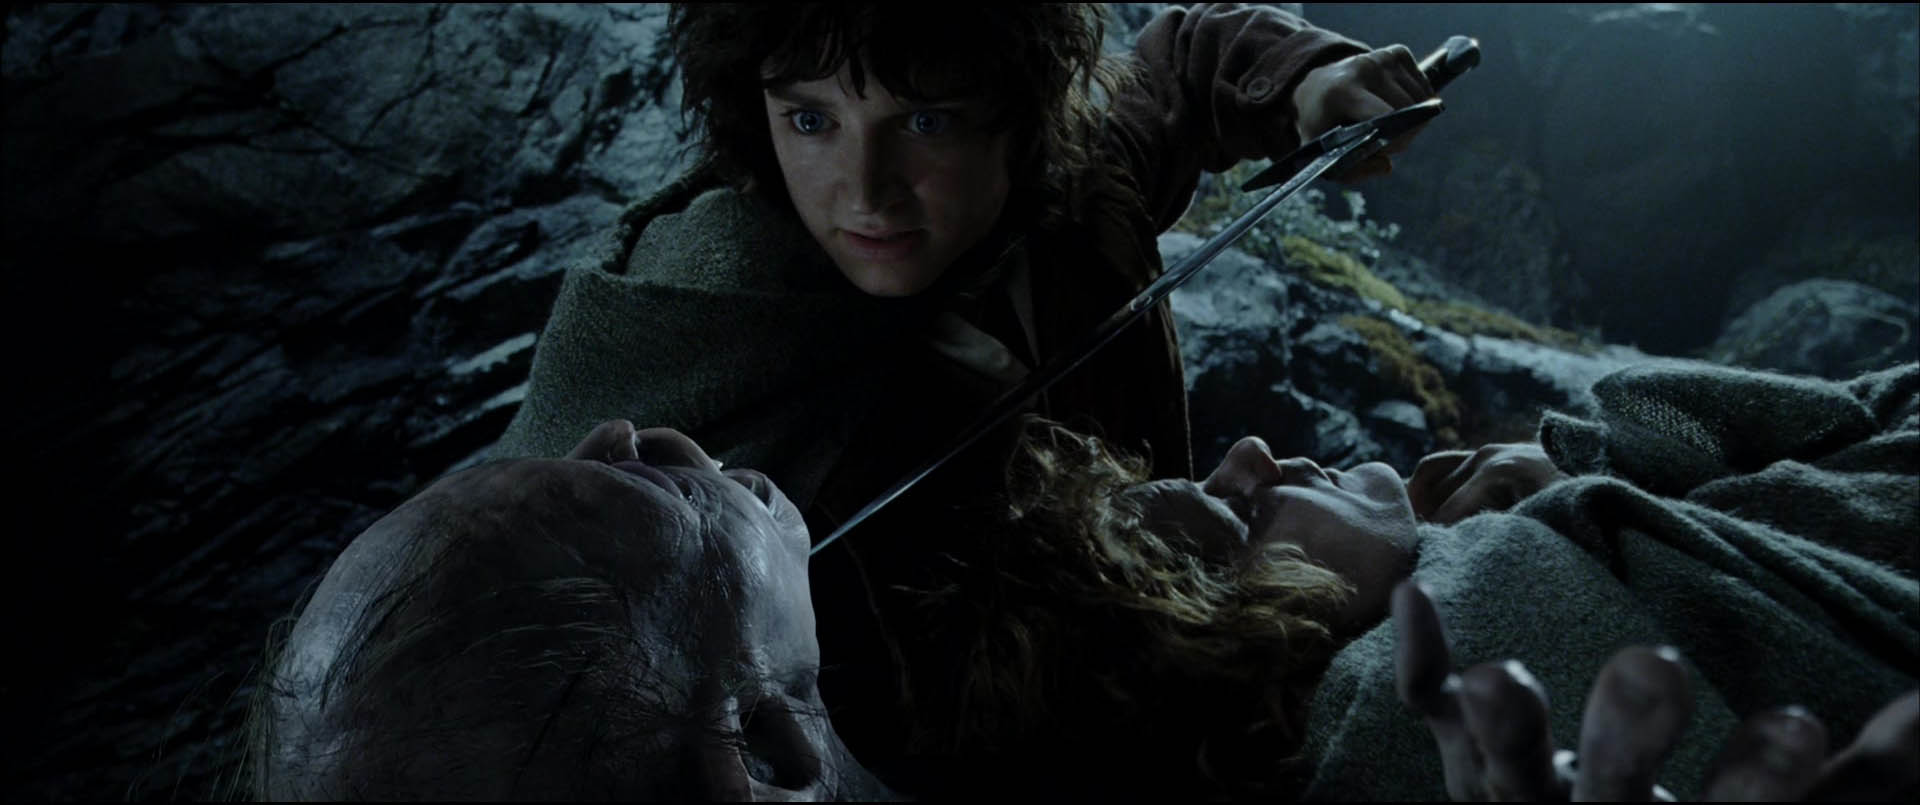 Властелин колец возвращение короля полная. Фродо и Сэм Шелоб. Фродо Возвращение. Властелин колец Возвращение короля Голлум.